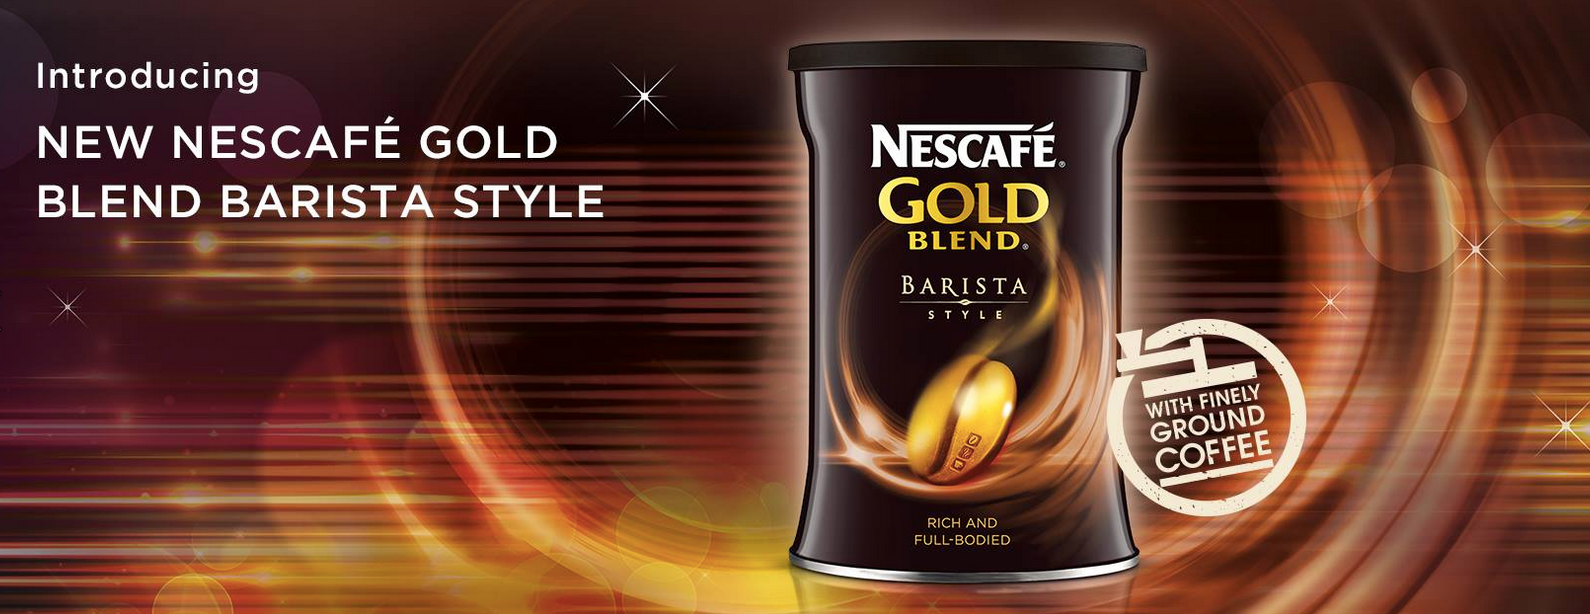 Нескафе крема купить. Нескафе Нестле кофе. Нескафе Голд. Реклама кофе Нескафе. Nescafe Gold марка.